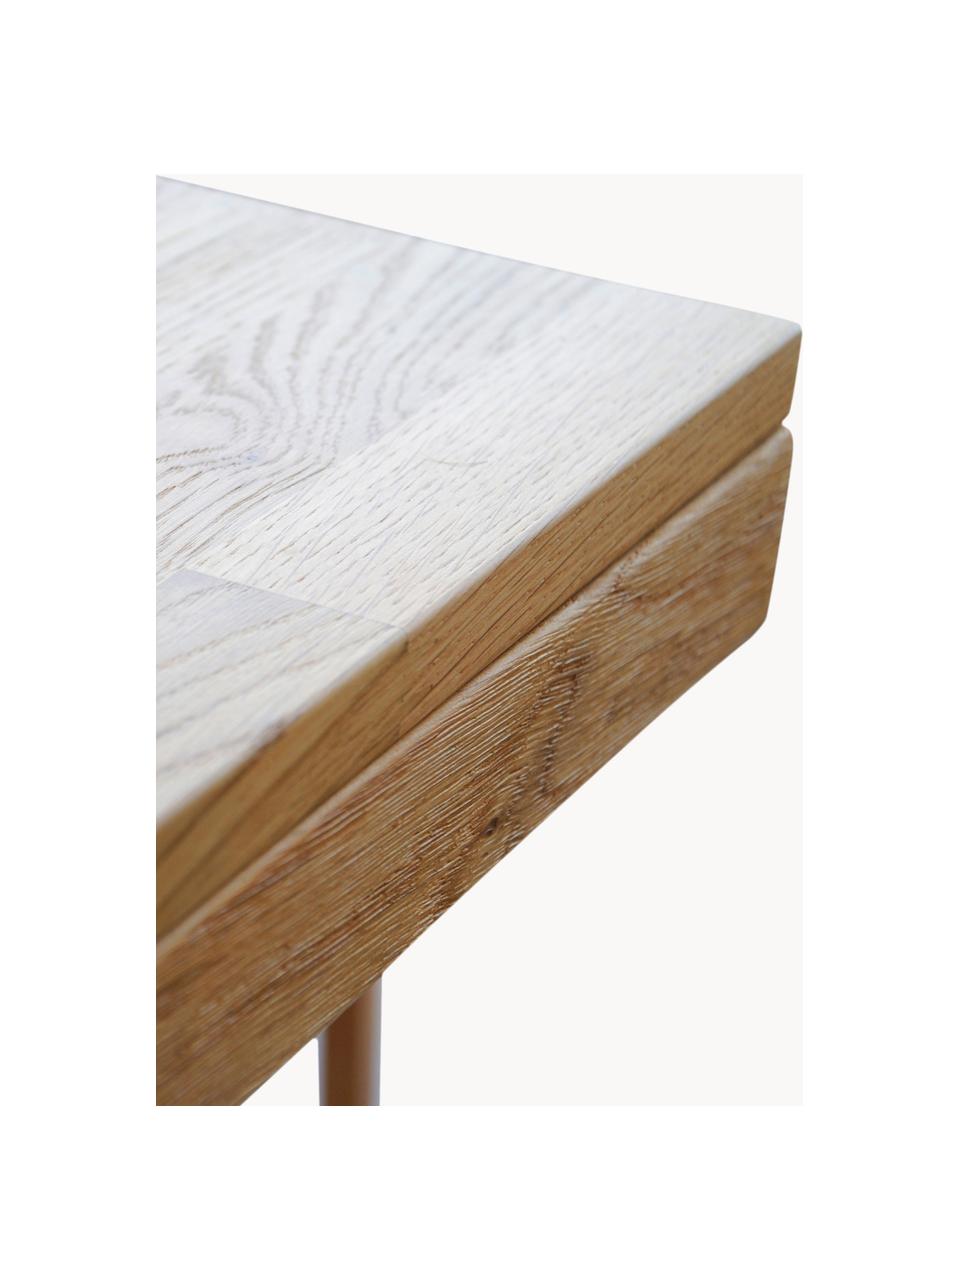 Verlängerbarer Esstisch Brooklyn aus Eichenholz, verschiedene Grössen, Massives Eichenholz, gebürstet und klar lackiert

Dieses Produkt wird aus nachhaltig gewonnenem, FSC®-zertifiziertem Holz gefertigt., Eichenholz, B 170/220 x T 95 cm